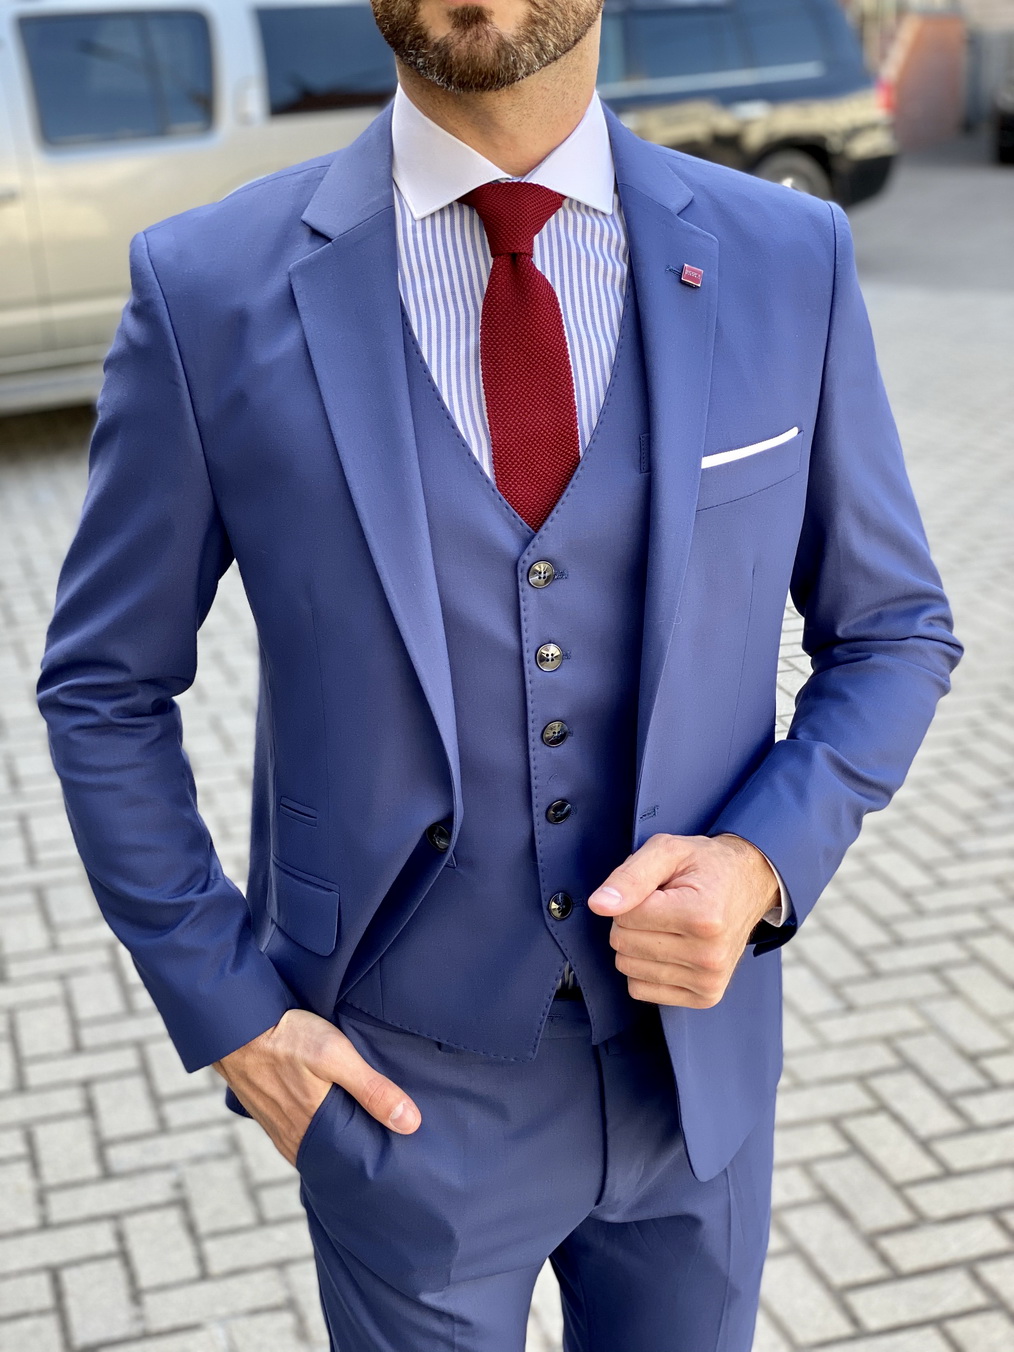 Мужской костюм-тройка синего цвета. Арт.:4-1638-3 – купить в магазине мужской одежды Smartcasuals